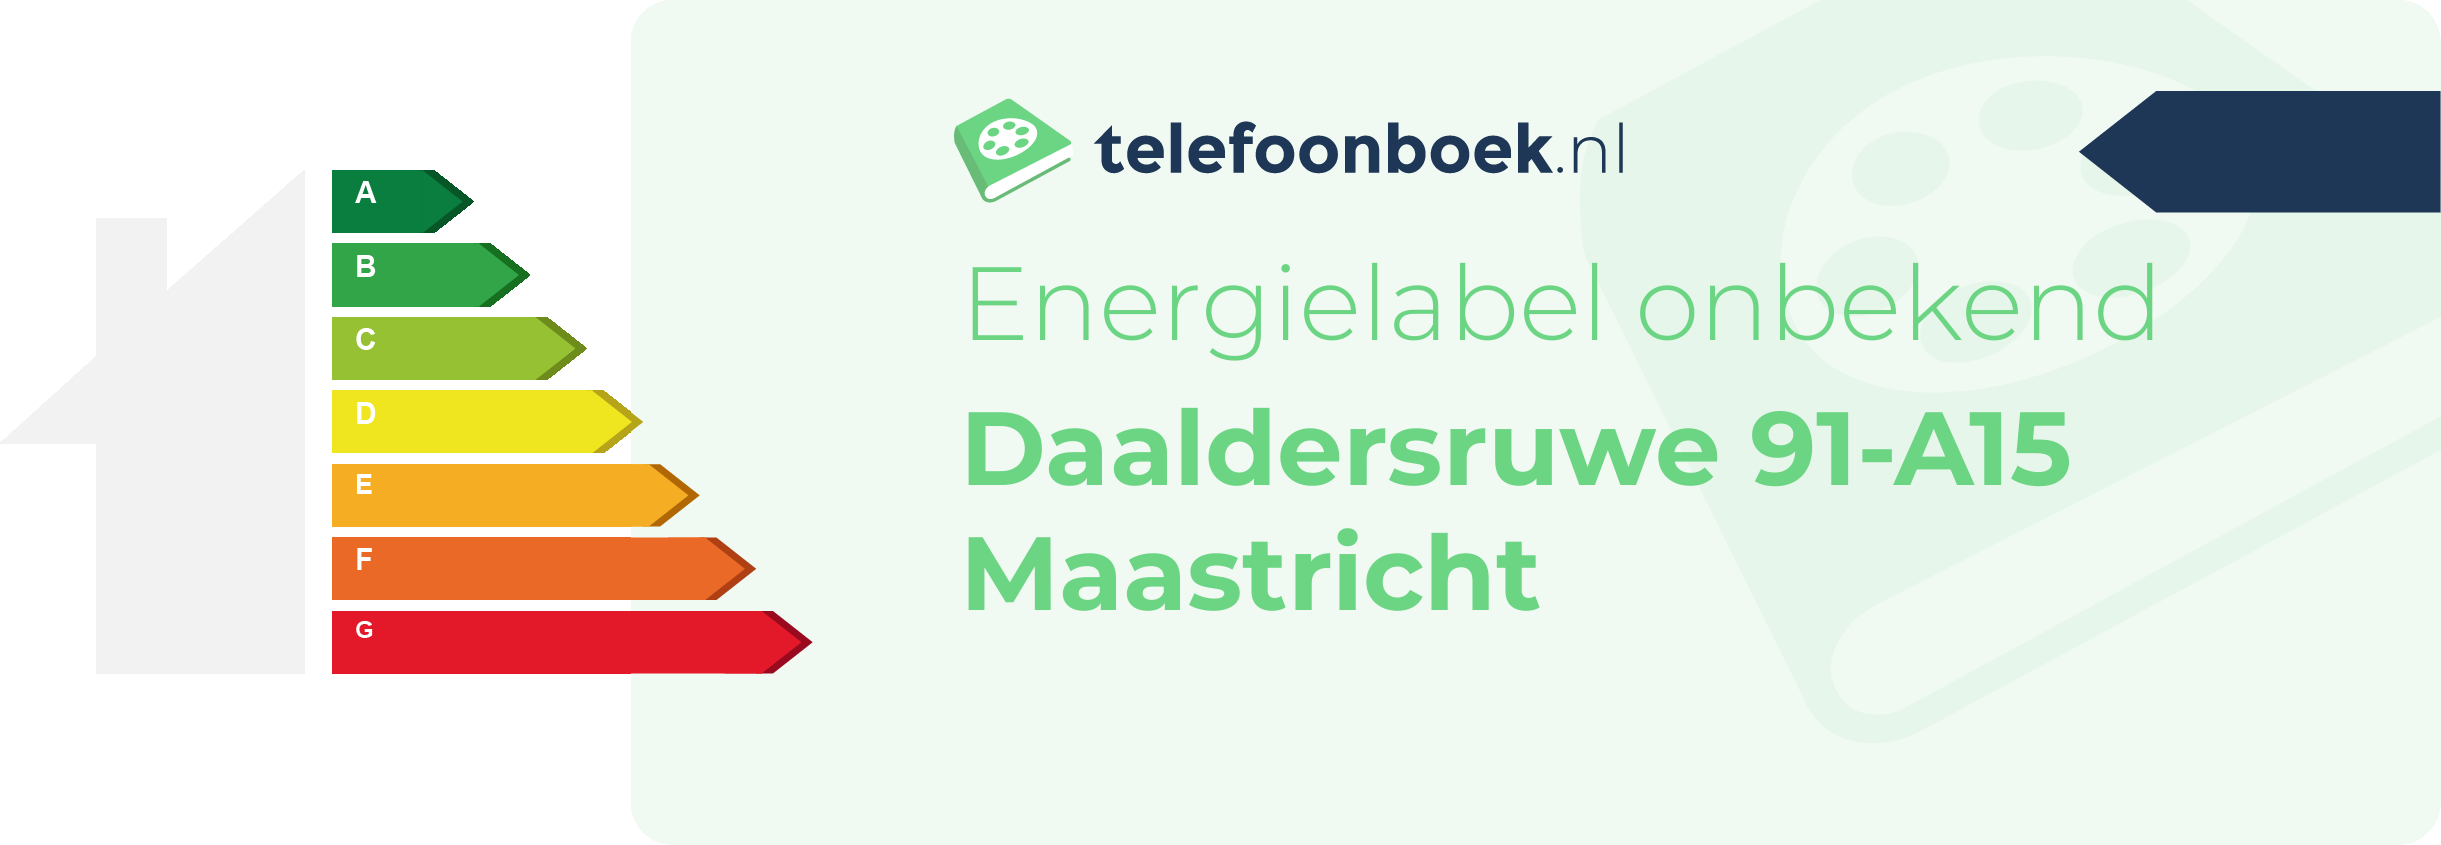 Energielabel Daaldersruwe 91-A15 Maastricht